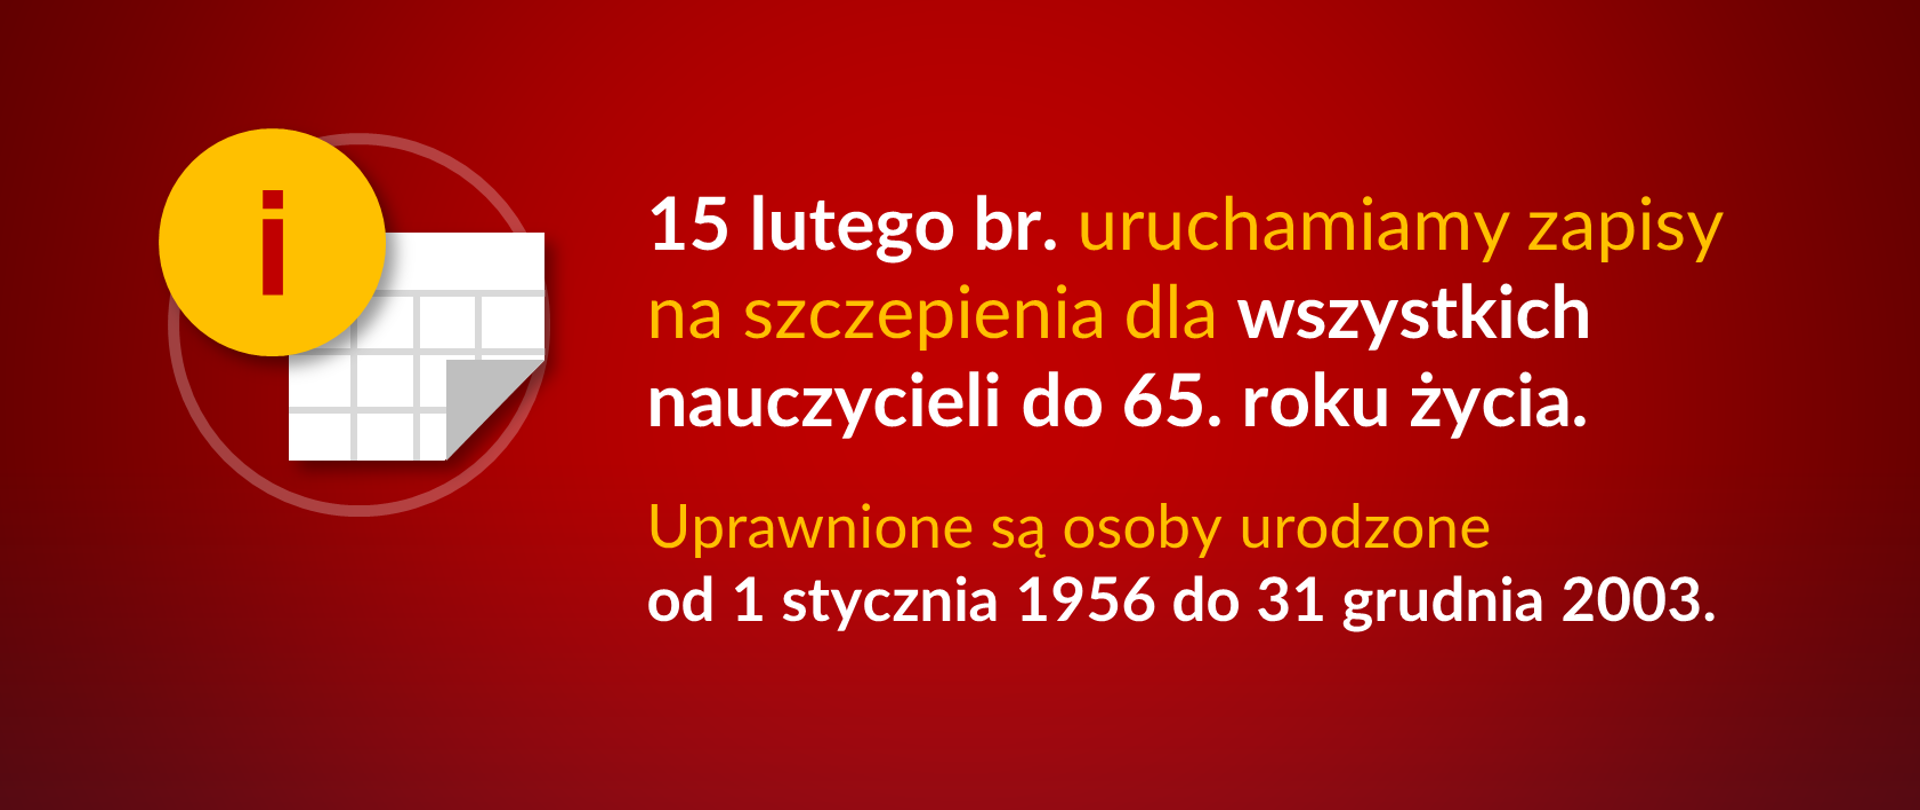 Grafika z tekstem: "15 lutego br. uruchamiamy zapisy na szczepienia dla wszystkich nauczycieli do 65. roku życia. Uprawnione są osoby urodzone od 1 stycznia 1956 do 31 grudnia 2003."